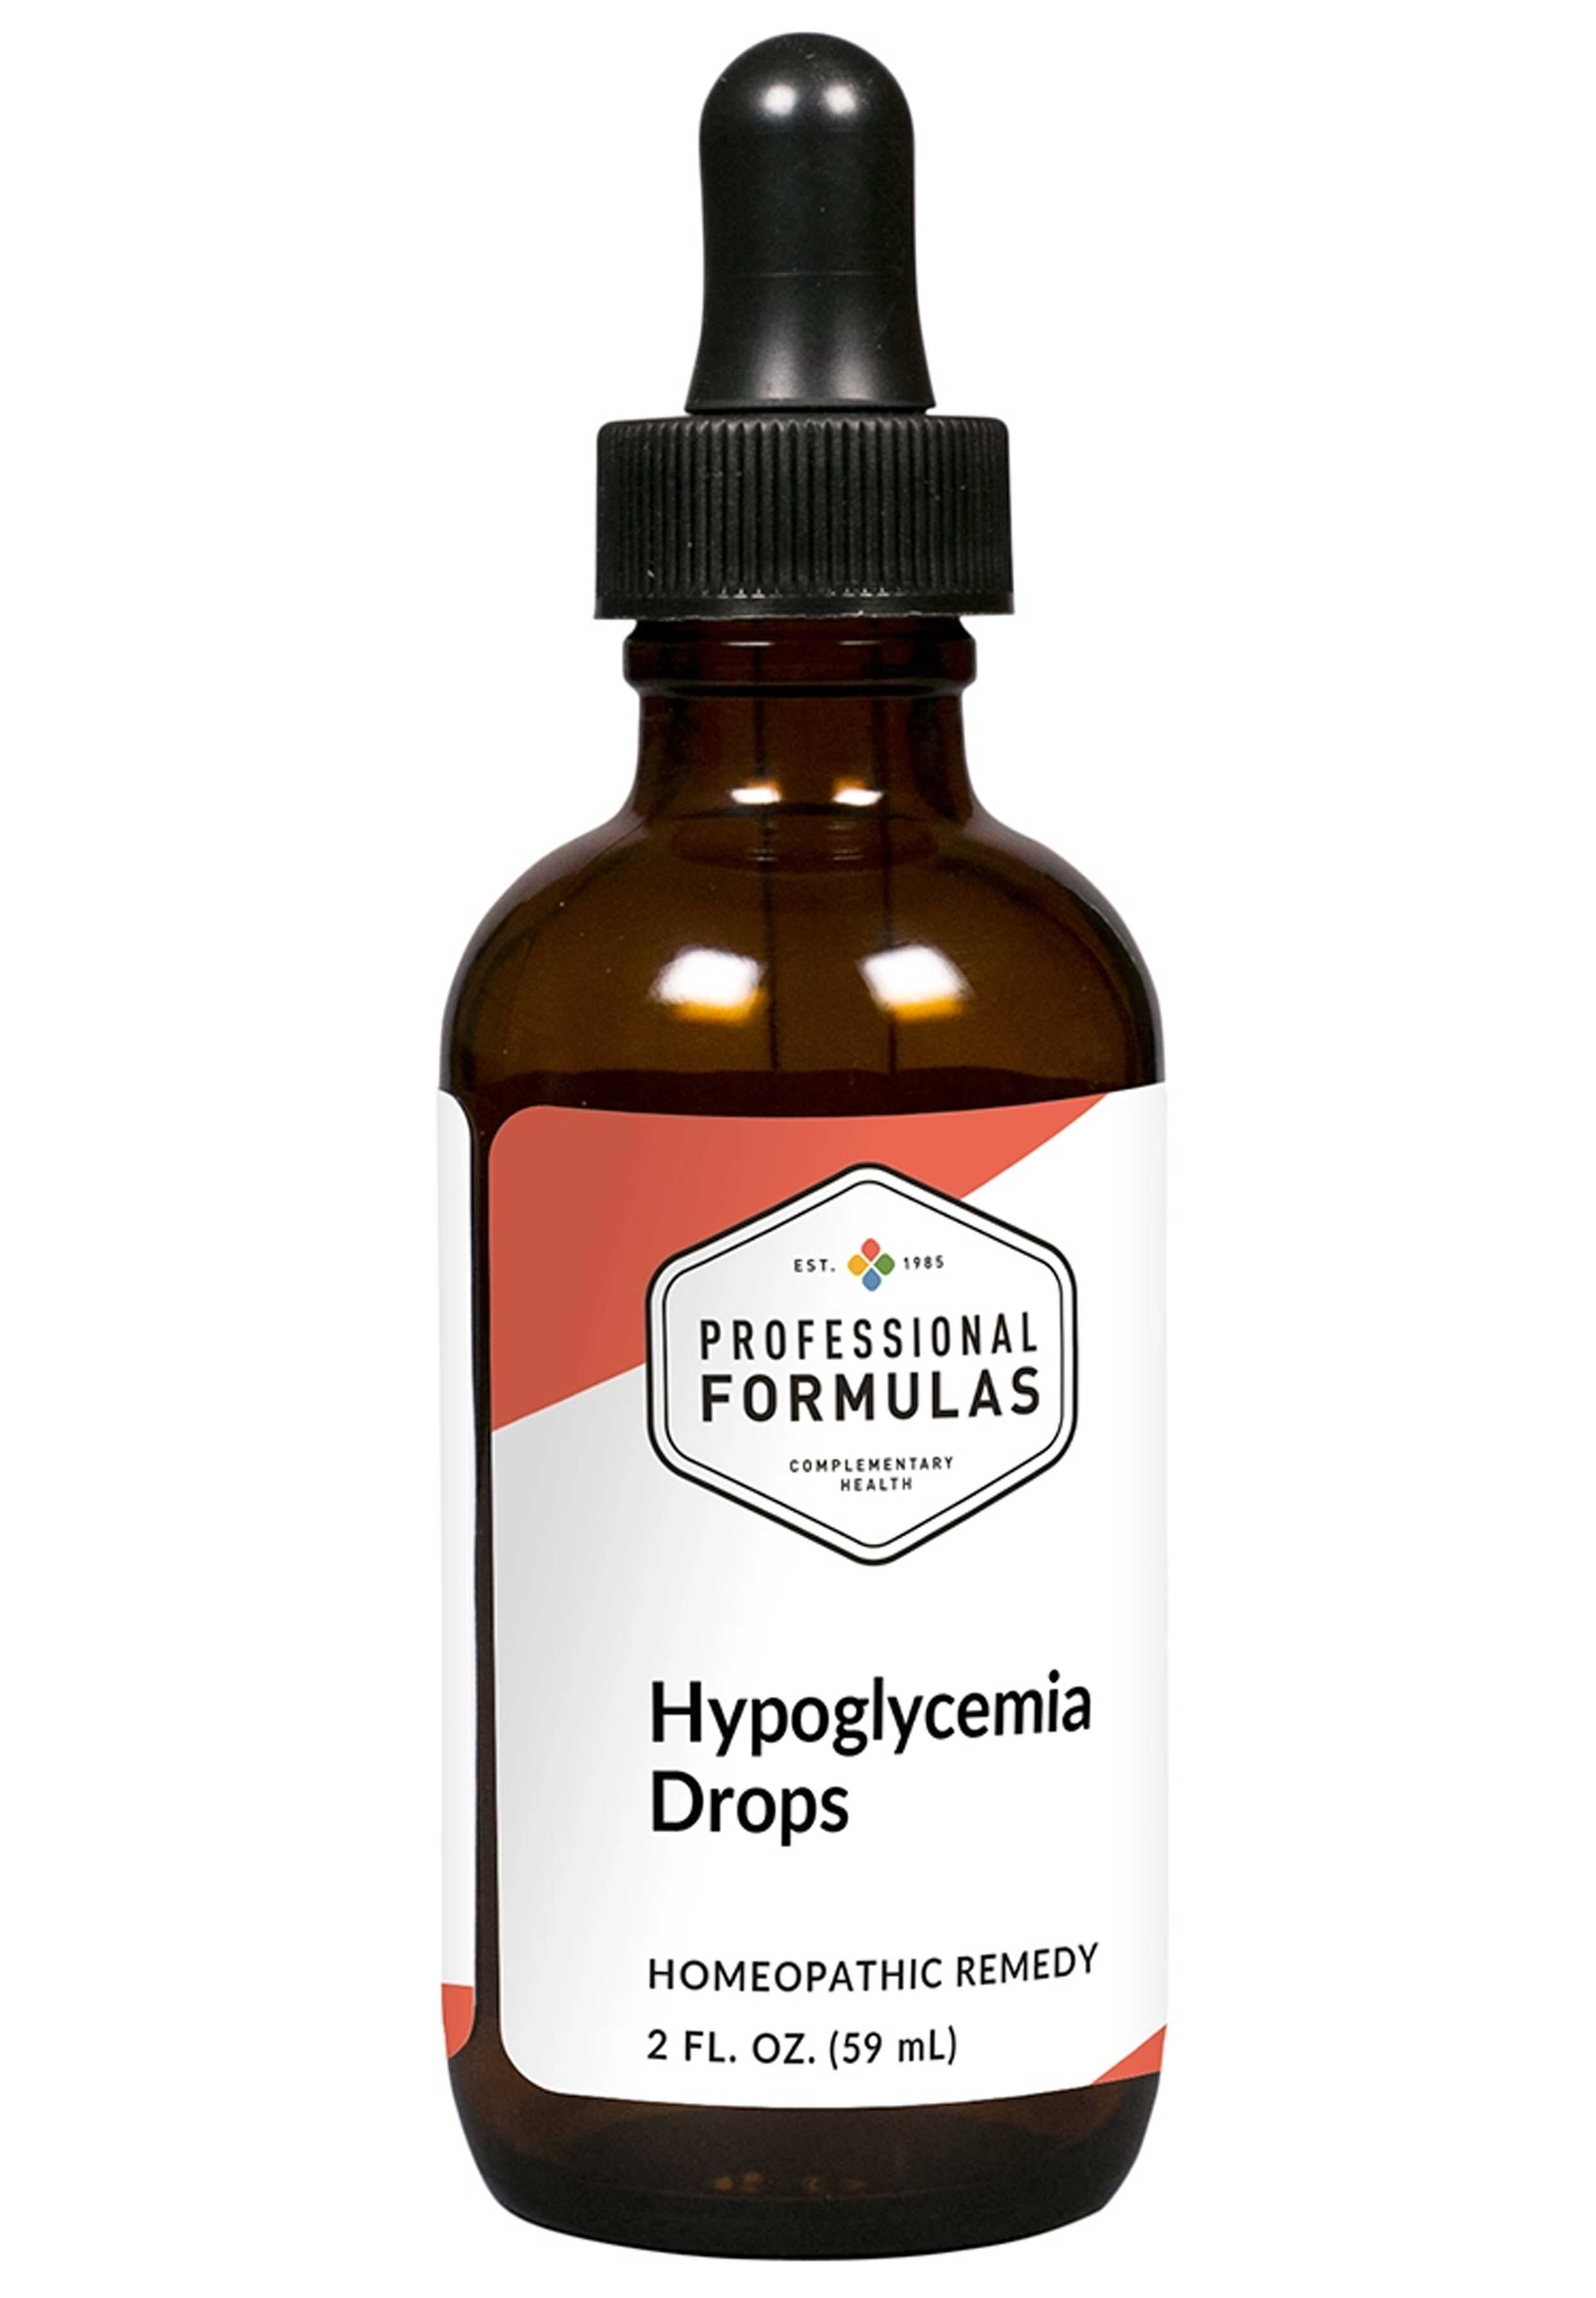 Professional Formulas Hypoglycemia Drops